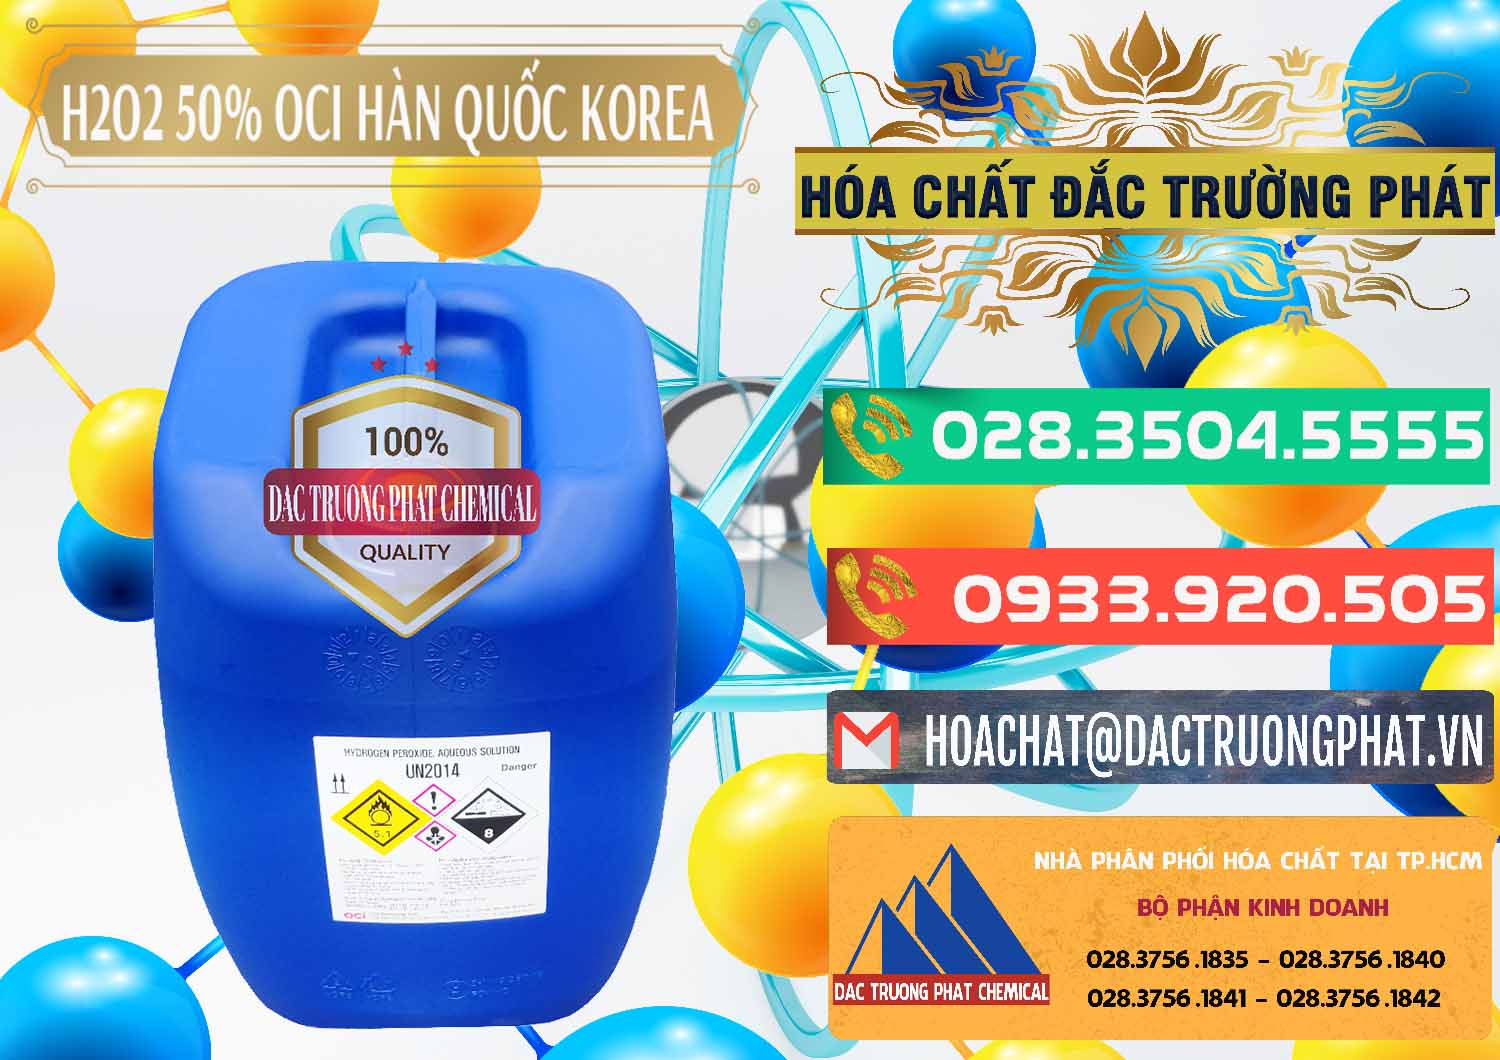 Cty chuyên bán _ cung cấp H2O2 - Hydrogen Peroxide 50% OCI Hàn Quốc Korea - 0075 - Đơn vị chuyên cung ứng - phân phối hóa chất tại TP.HCM - congtyhoachat.com.vn